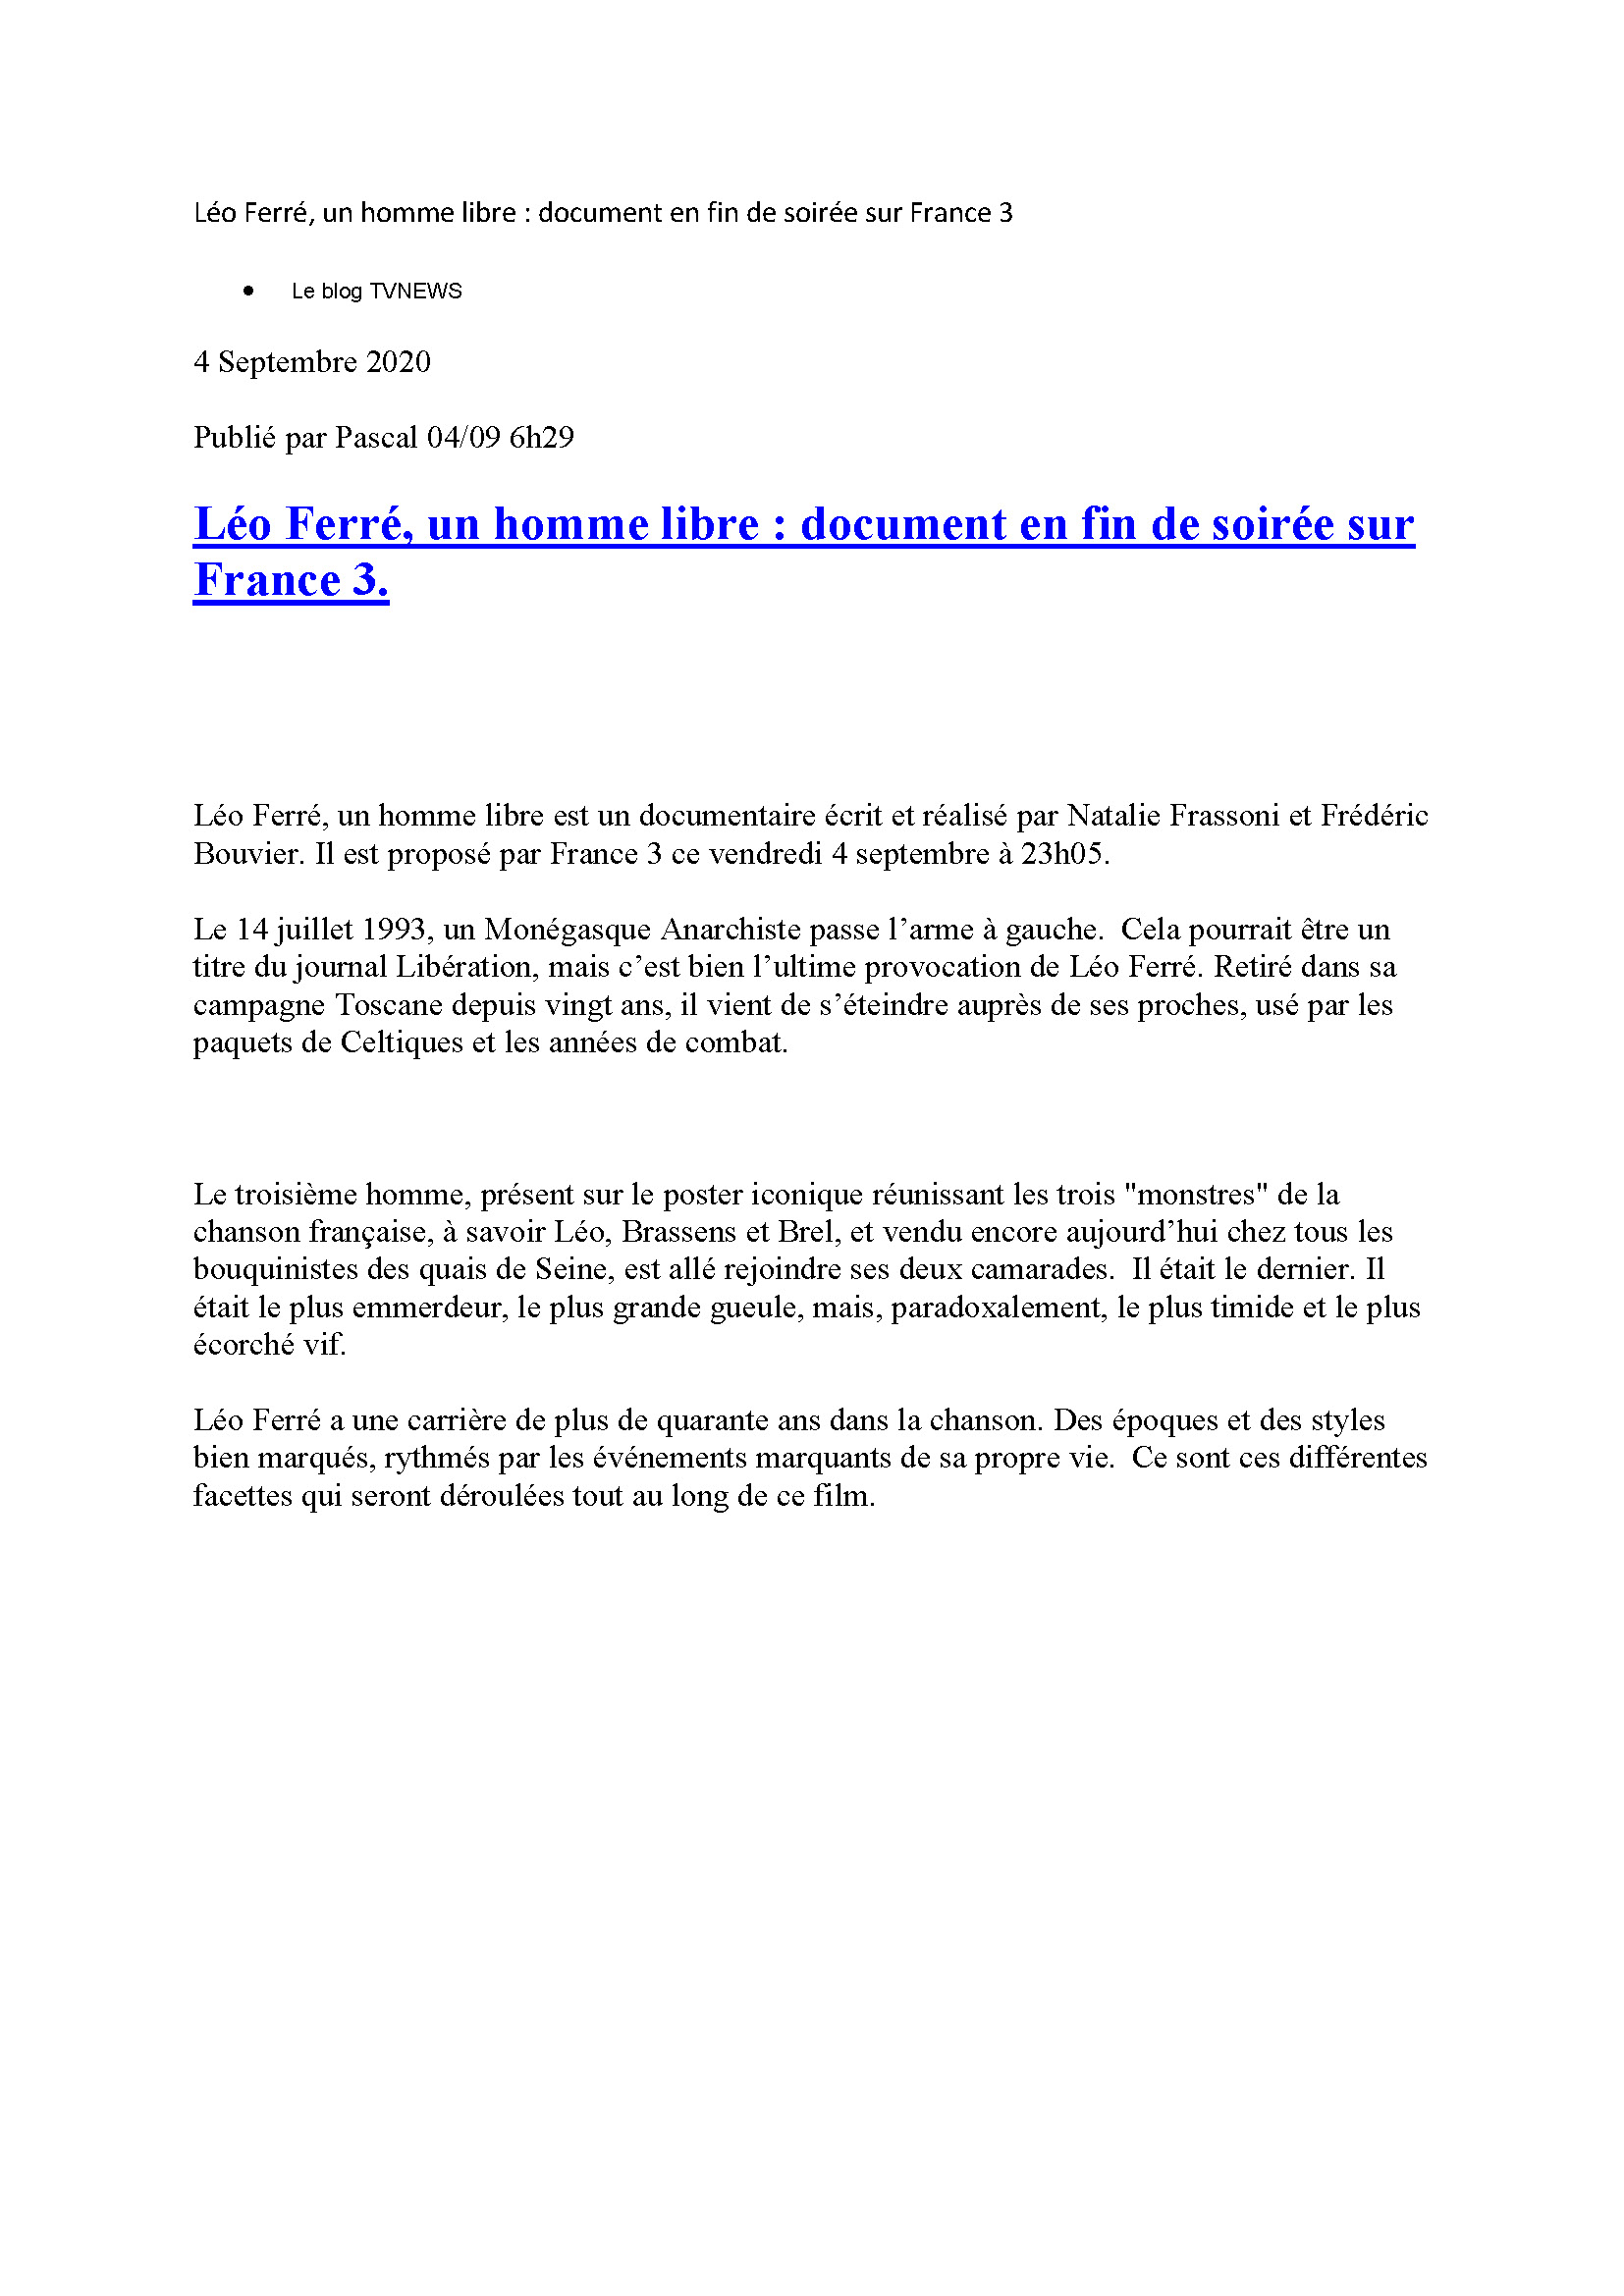 04/09/2020 Le Blog TVNews Léo Ferré, un homme libre